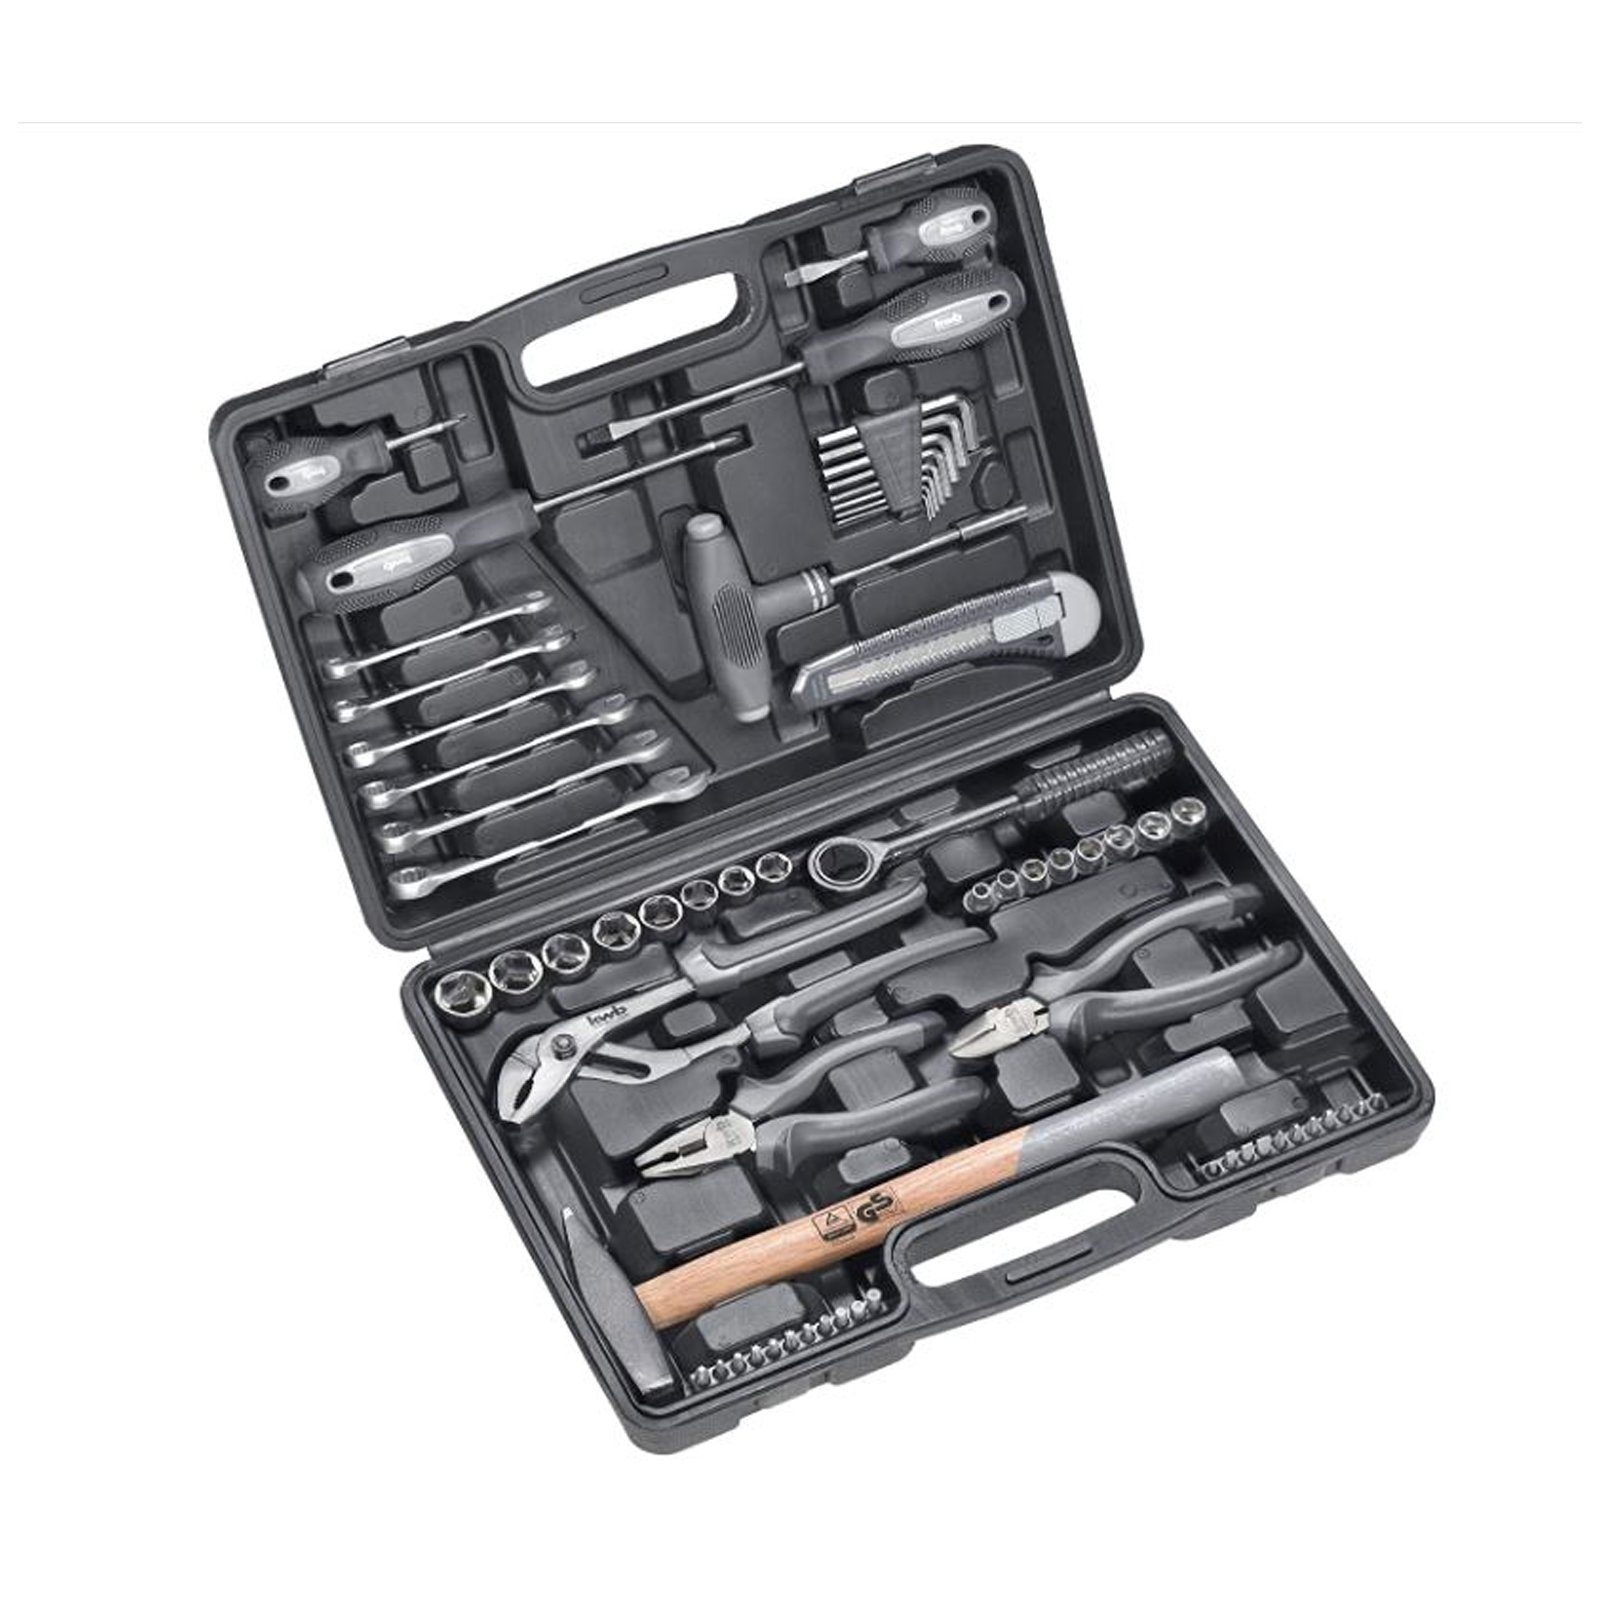 kwb Werkzeugset kwb Werkzeug-Koffer inkl. Werkzeug-Set, 63-teilig, gefüllt, robust